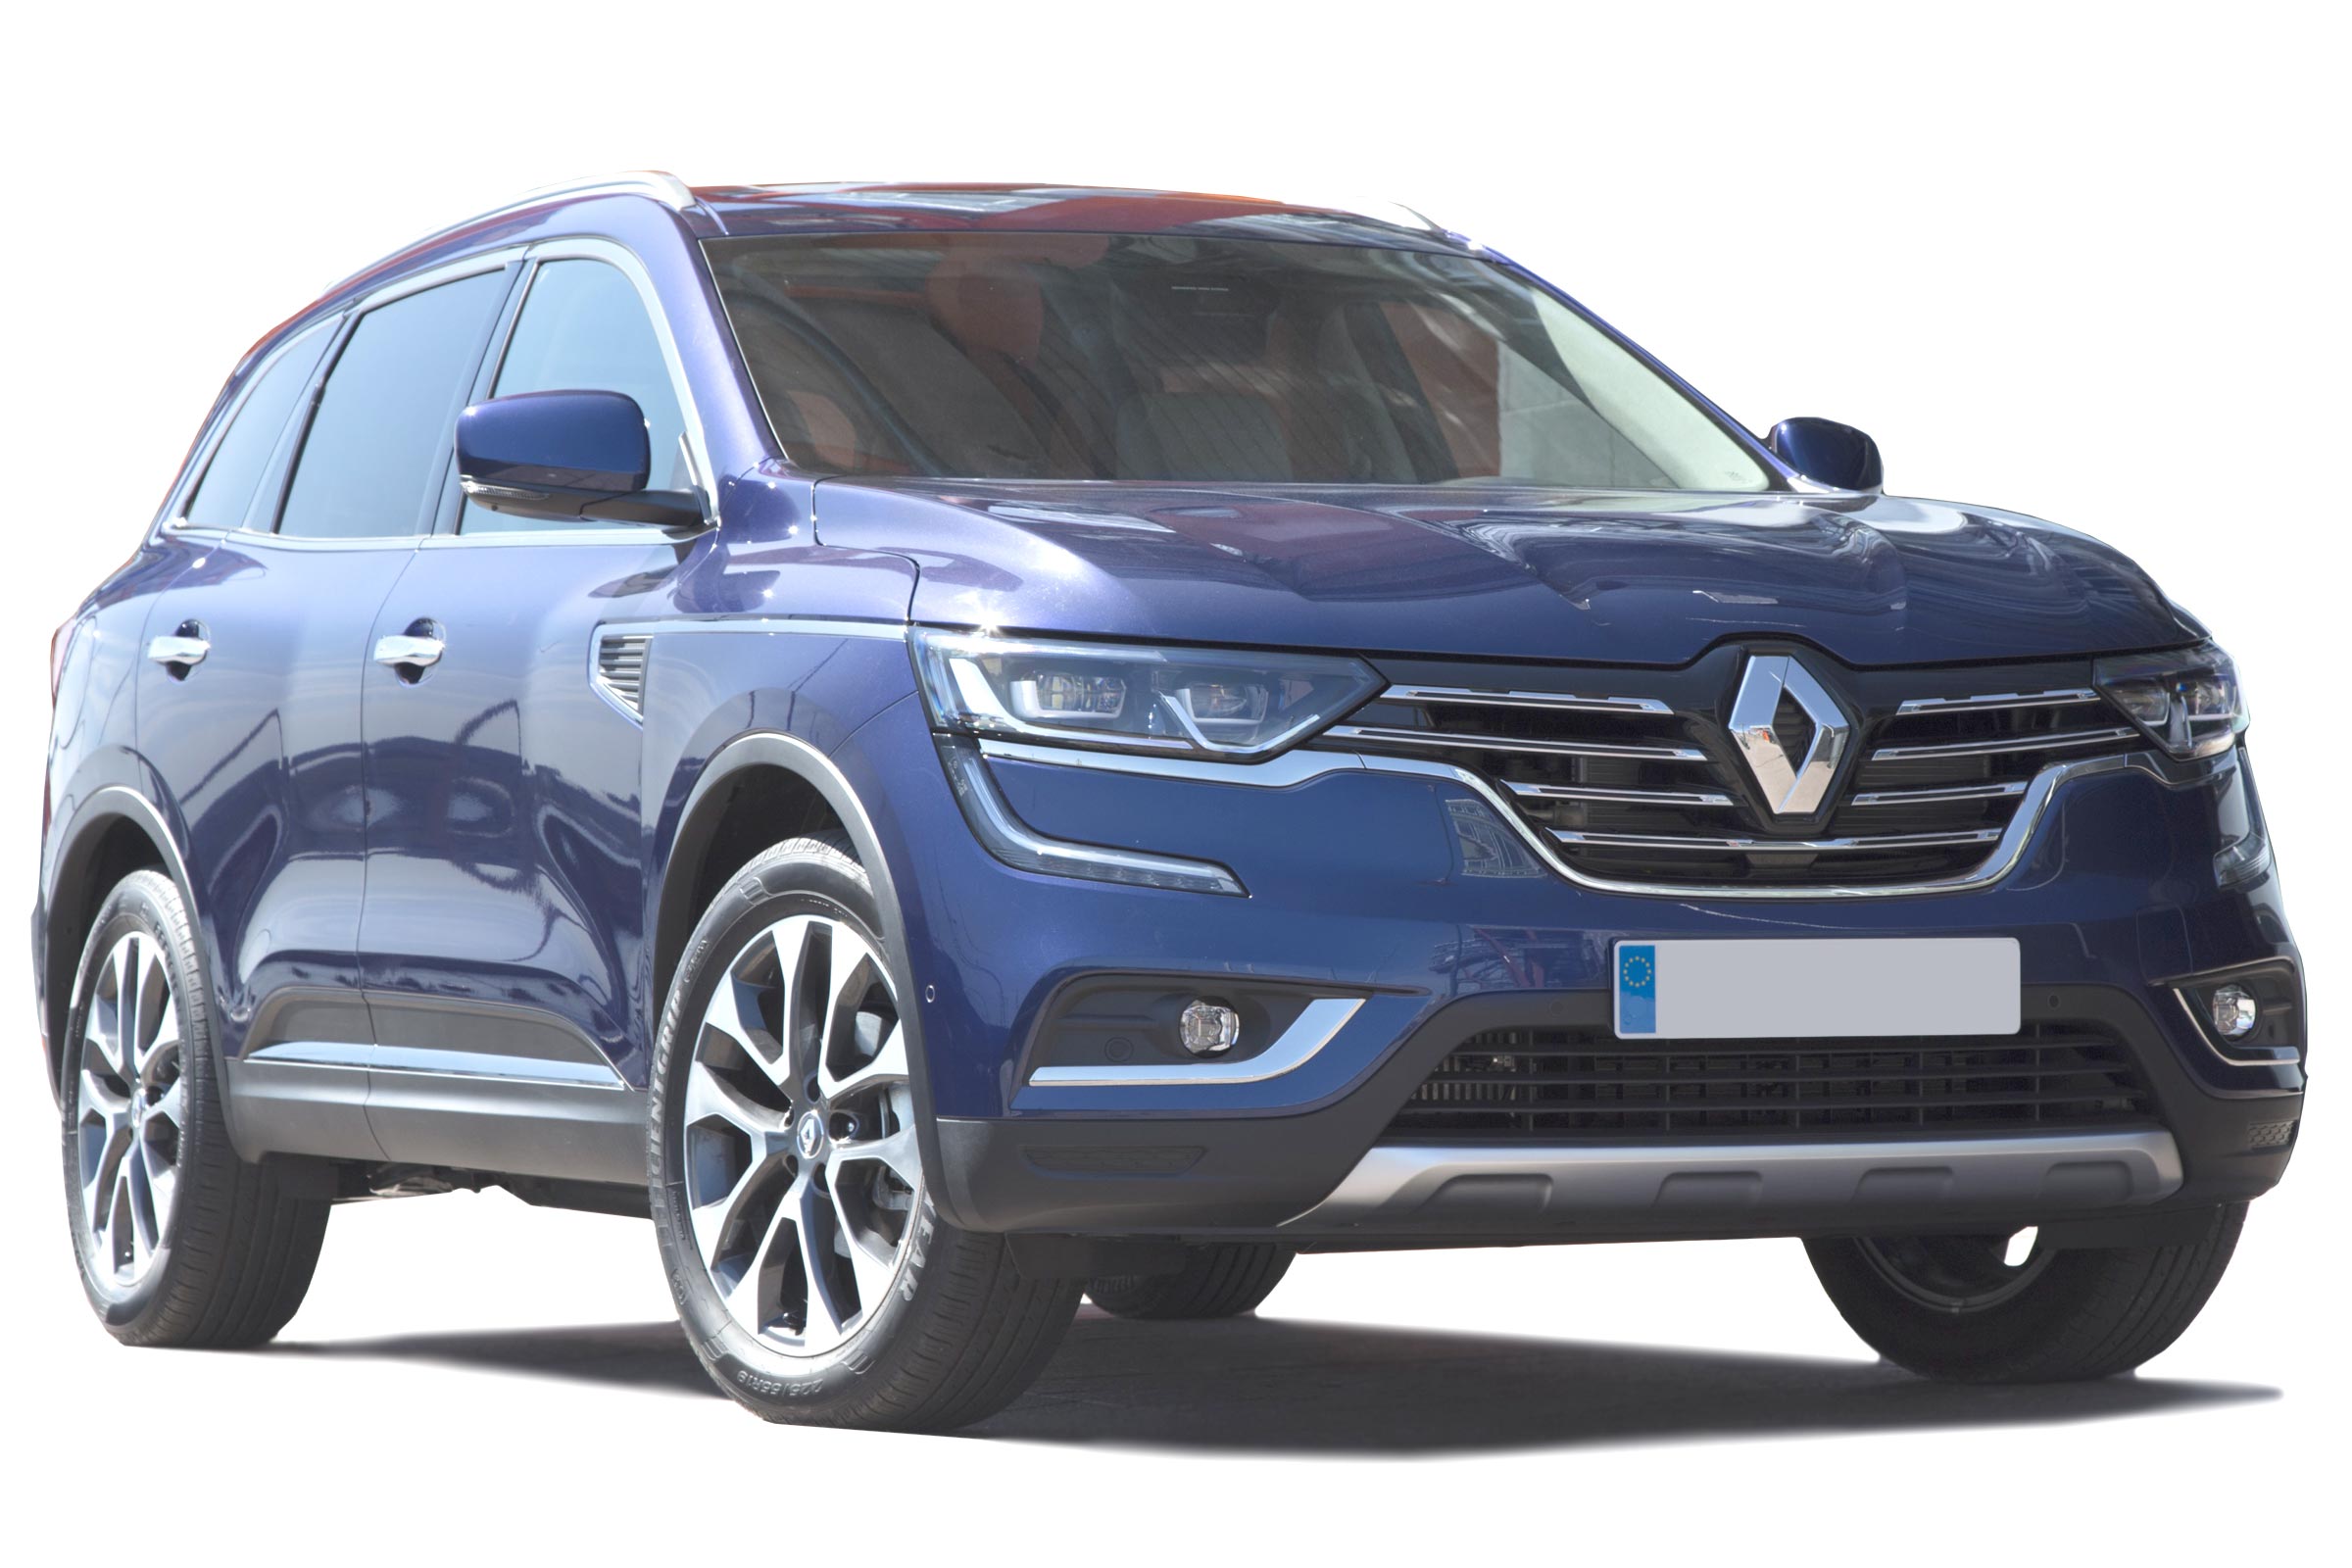 Renault Koleos SUV - Engines, drive & performance 2020 